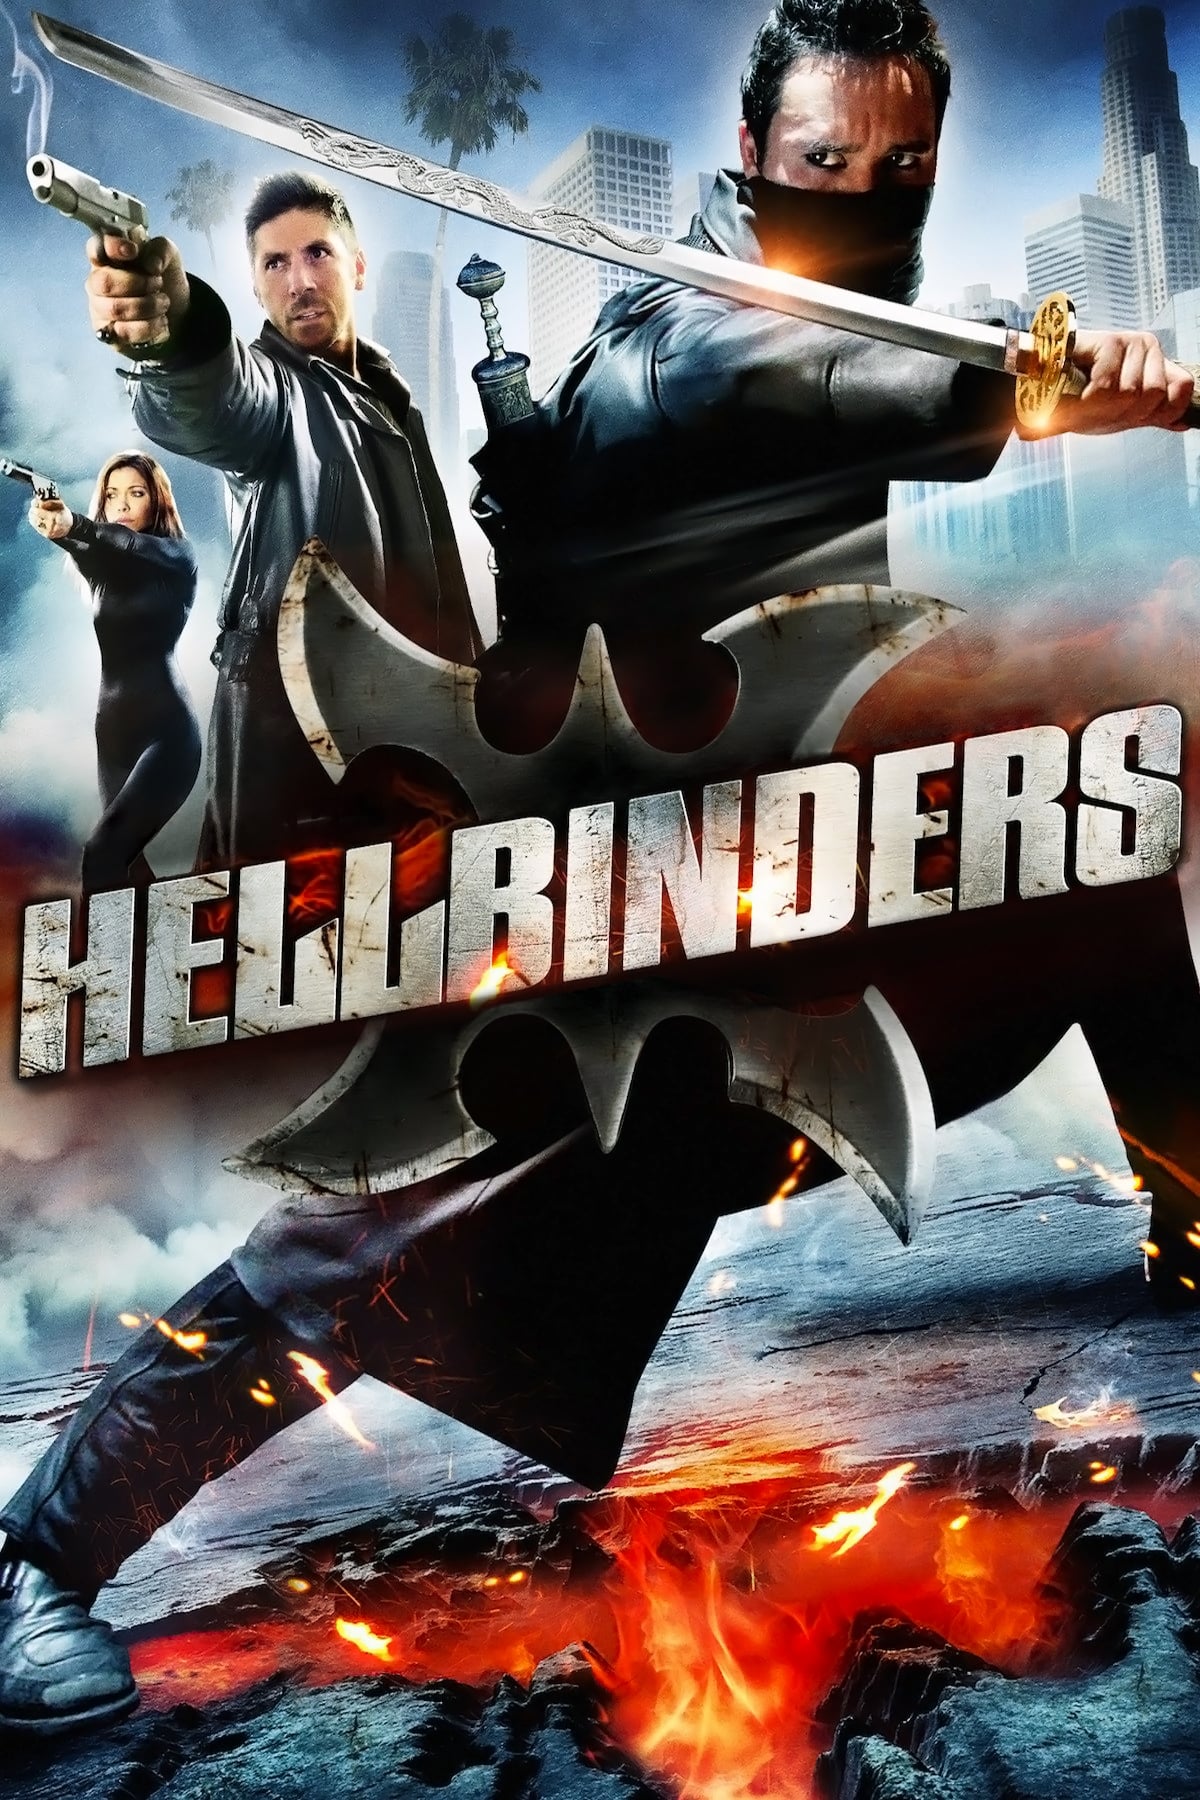 Hellbinders (2009)